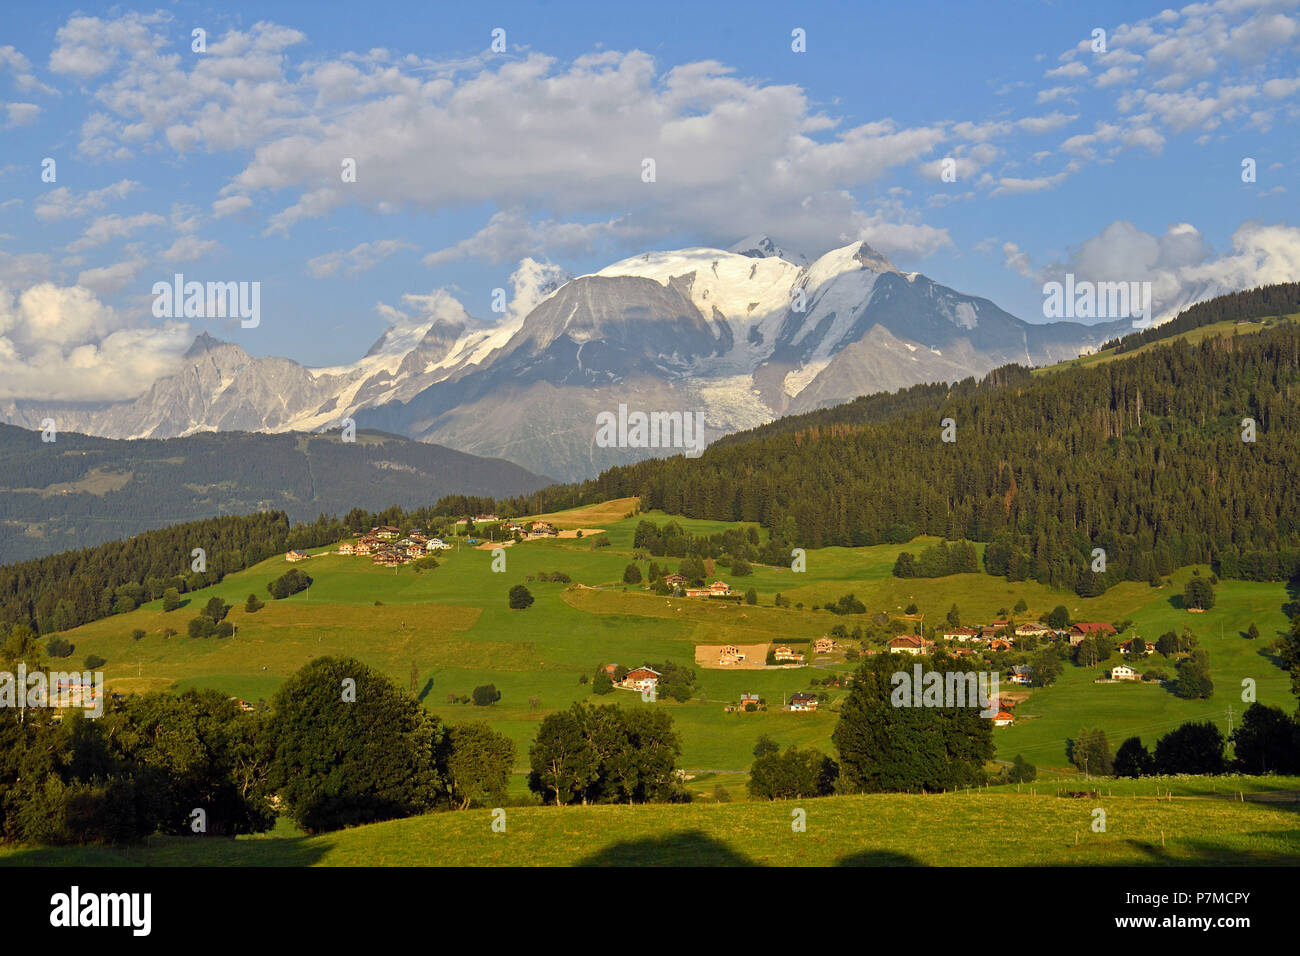 Francia, Haute Savoie, Combloux y pico del Mont Blanc (4810m) Foto de stock